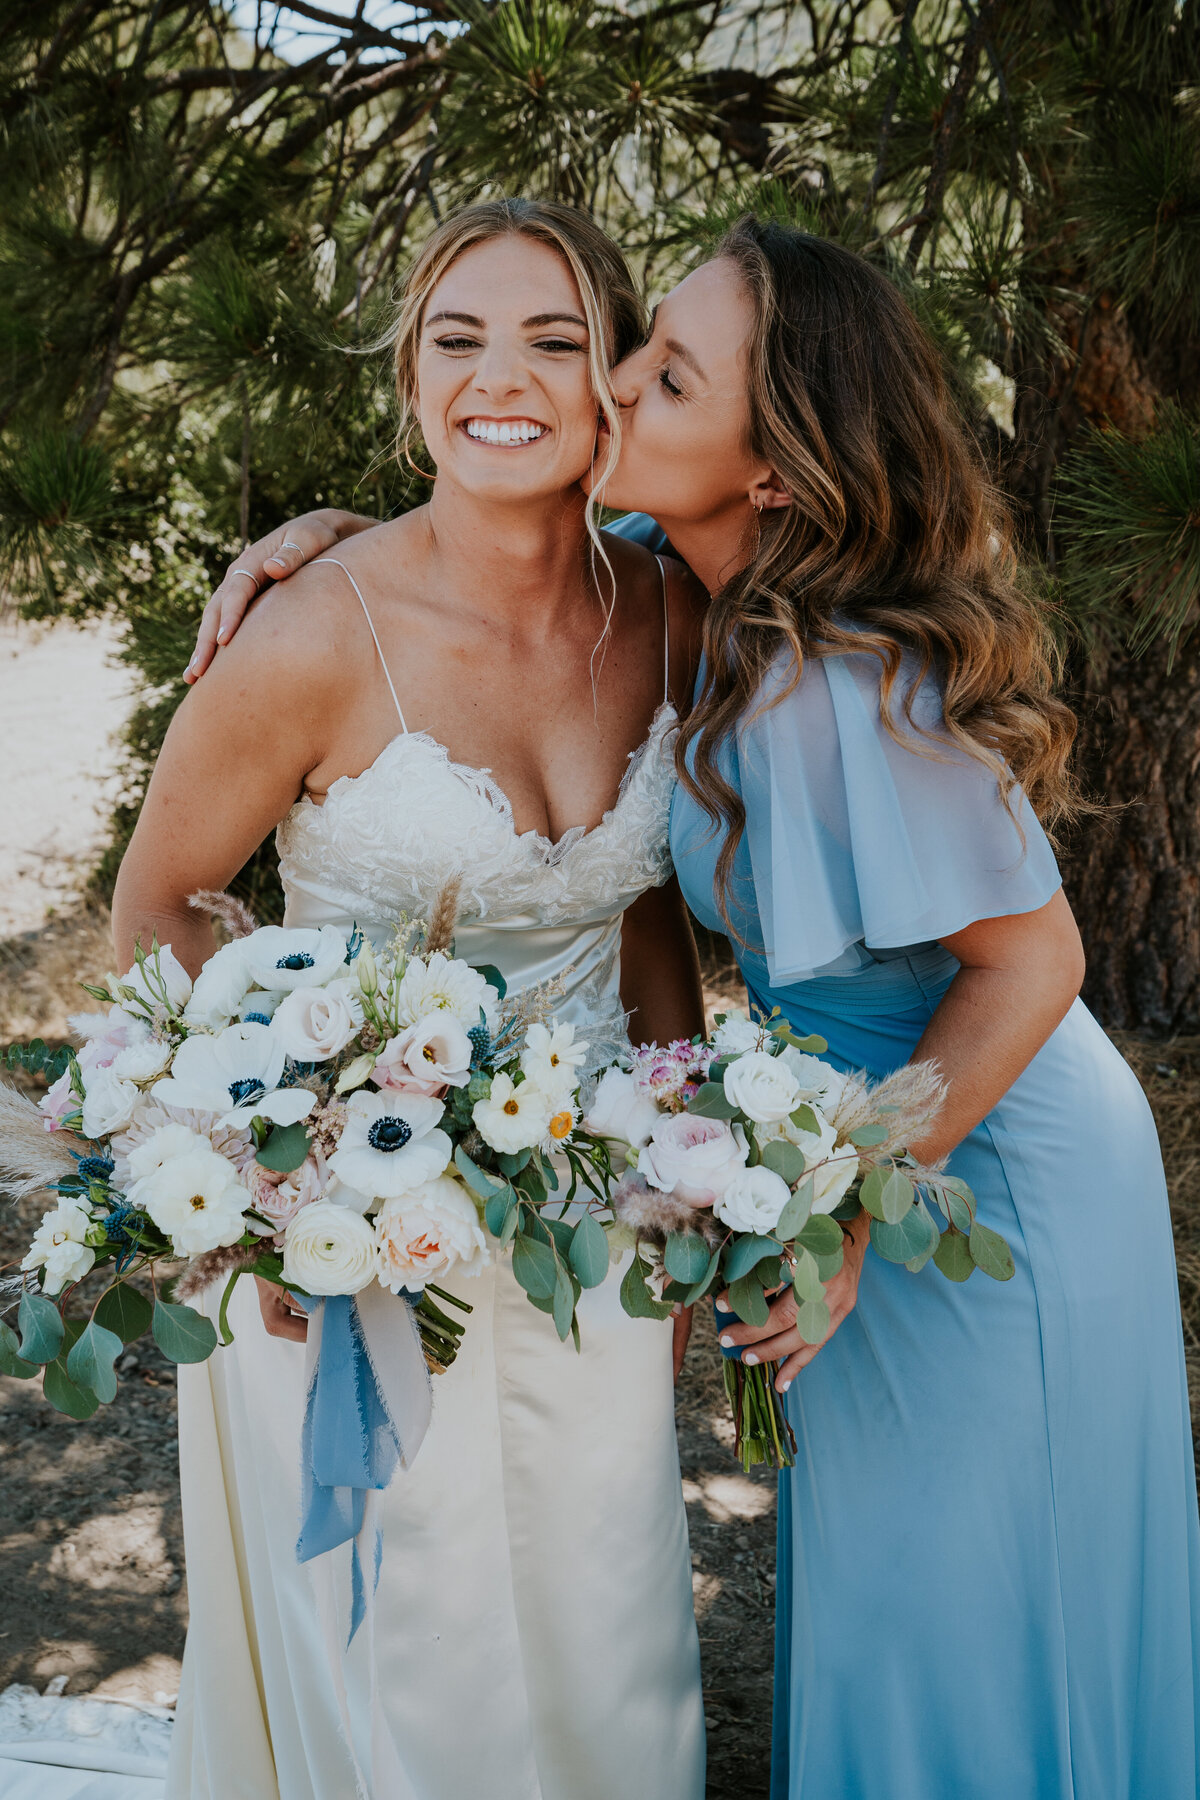 Bridesmaid kisses brides cheek while bride smiles holding bouquet.